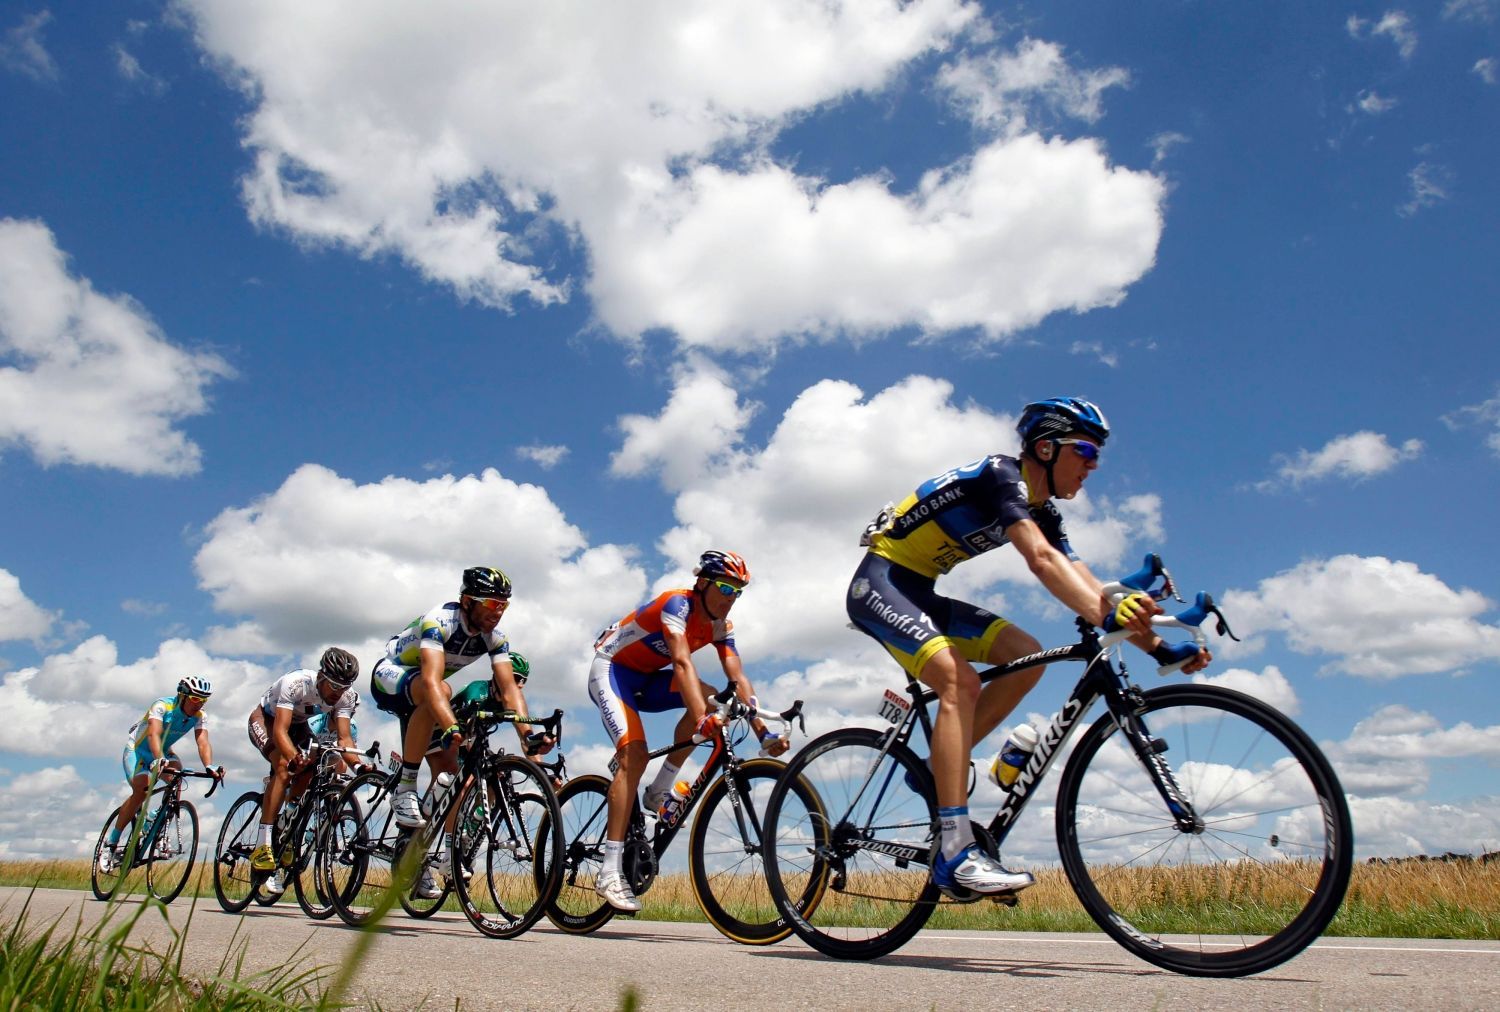 Dánský cyklista Chris Anker Sorensen během sedmé etapy Tour de France 2012 vede skupinku cyklistů.